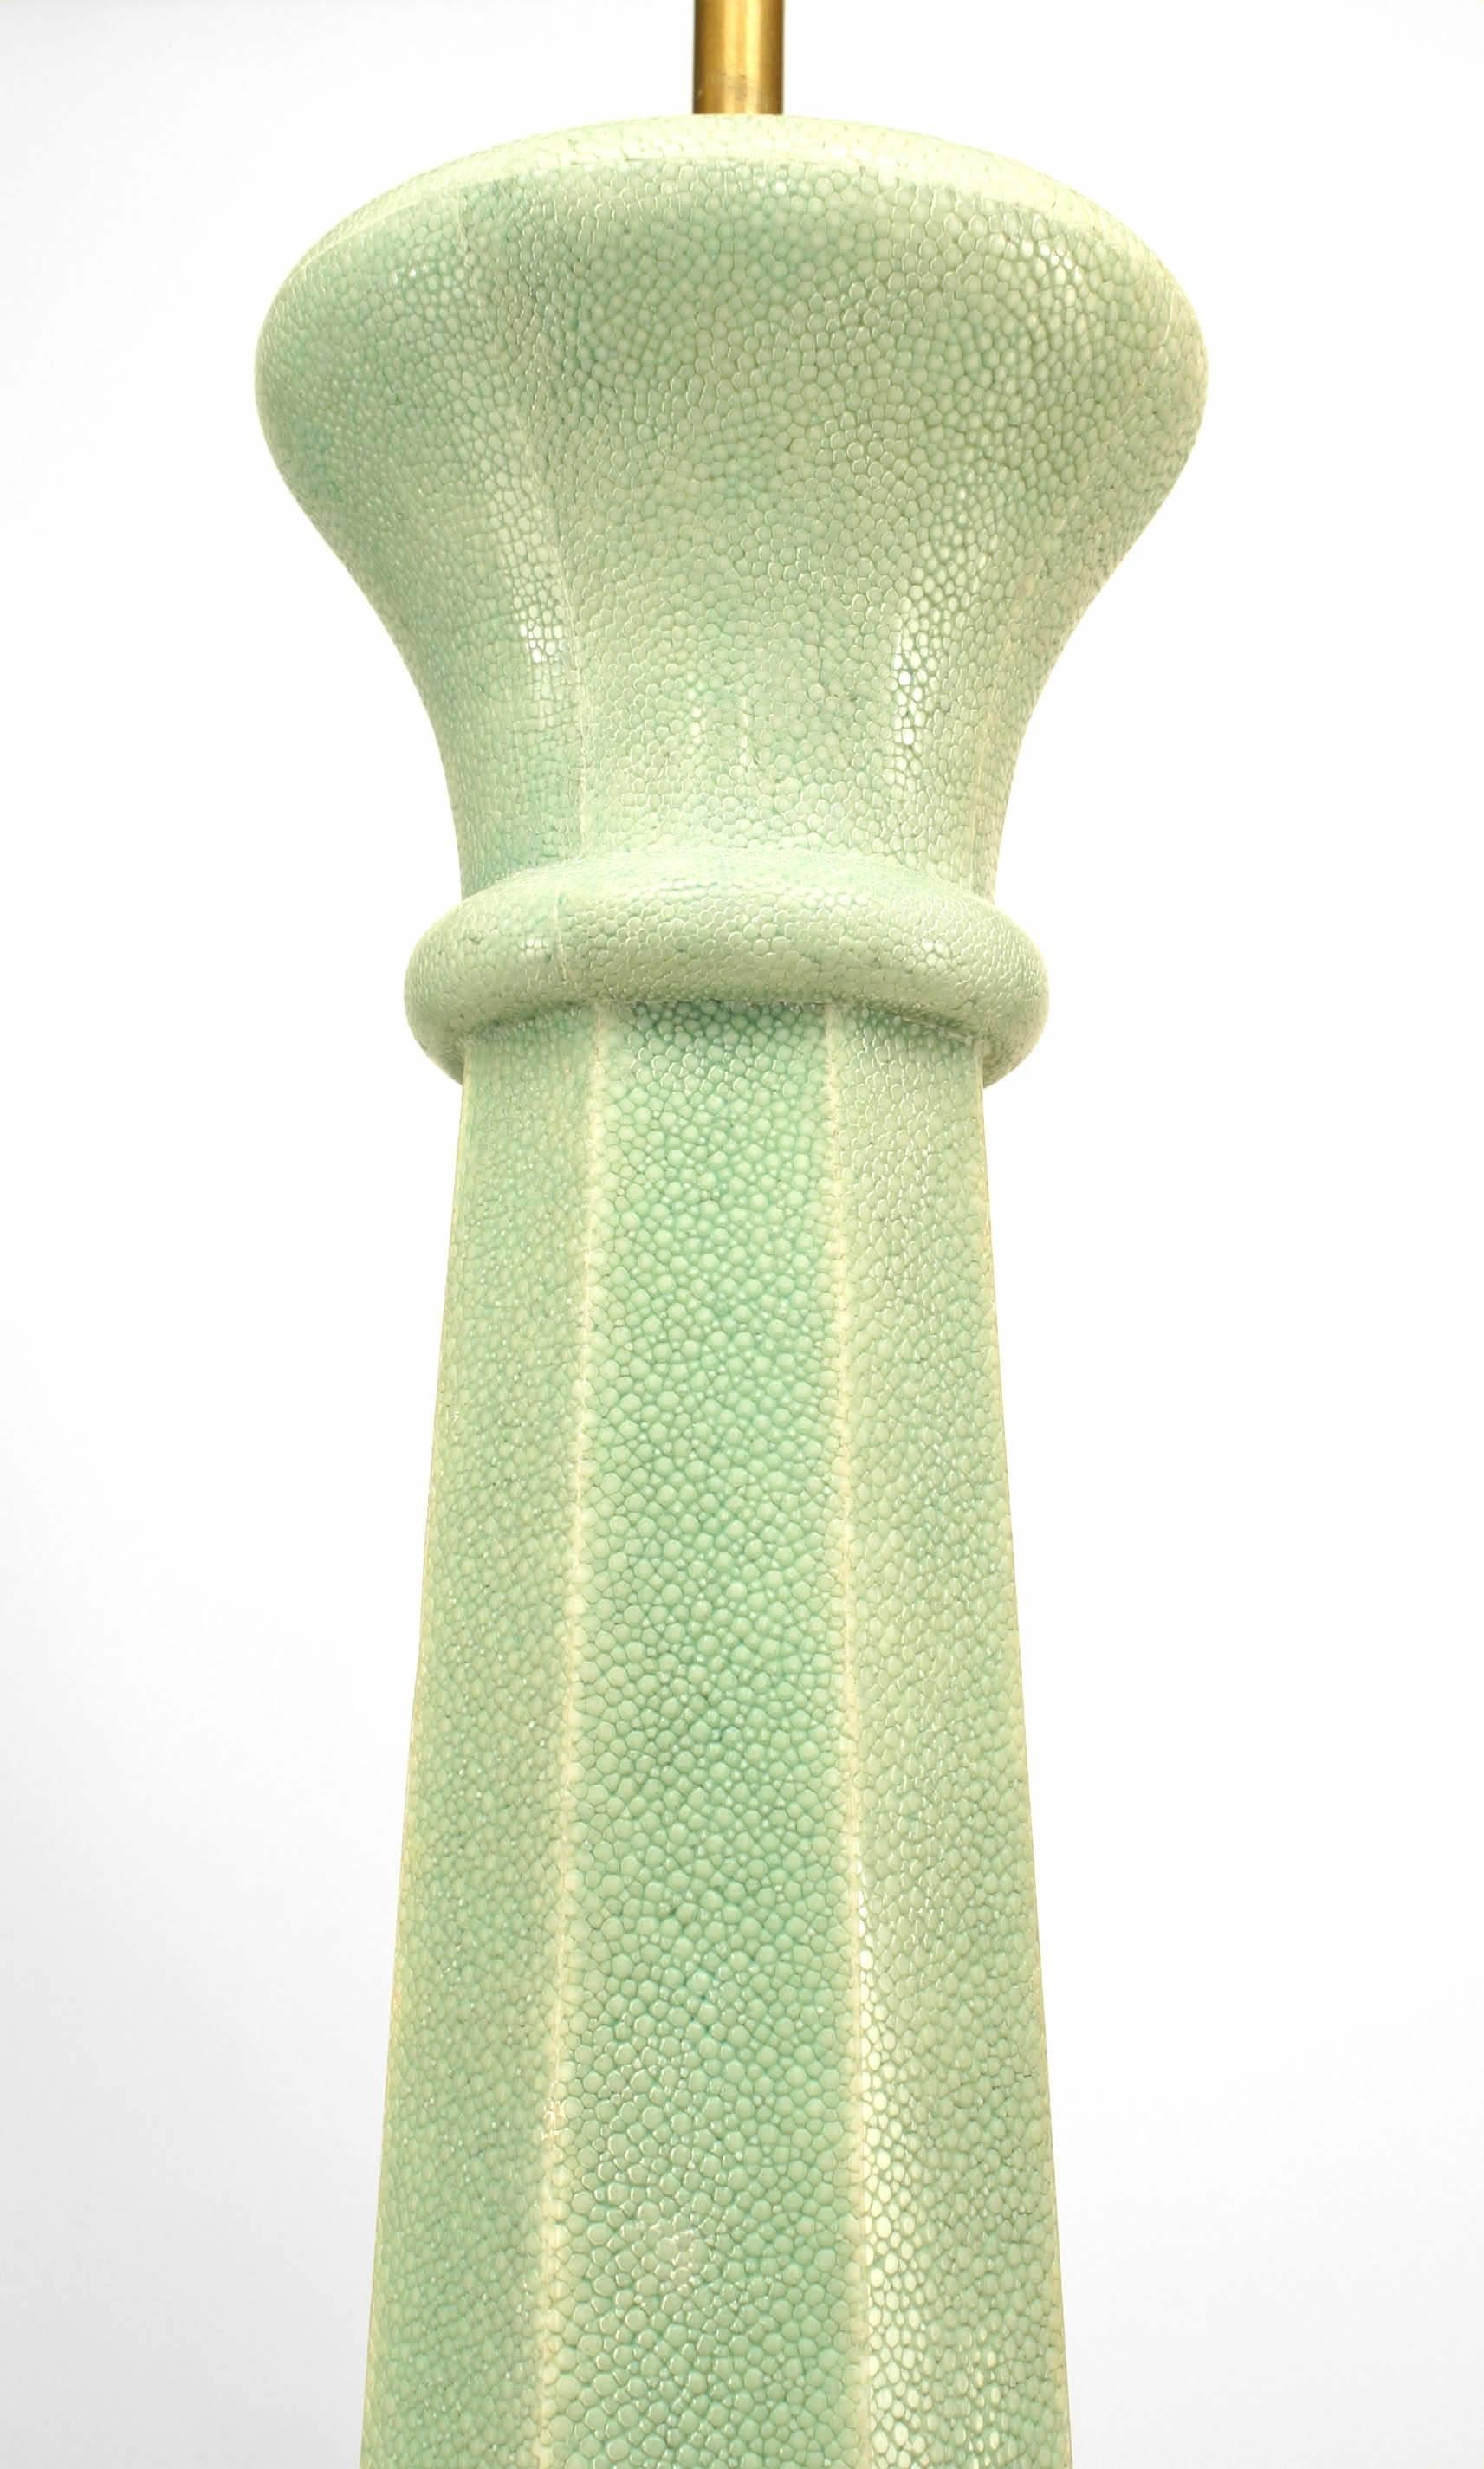 Lampe de table de style Art Déco français en galuchat vert et os incrusté, de forme octogonale effilée.
